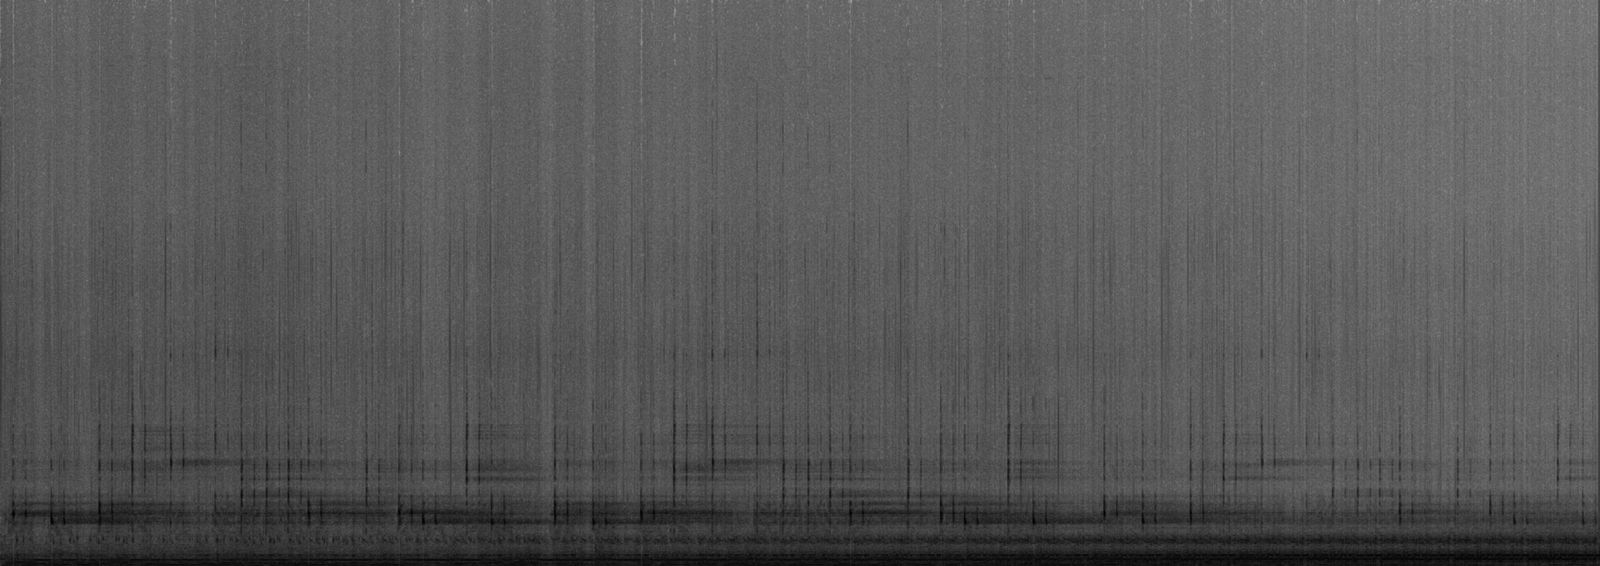 © Jošt Dolinšek - Soundscape spectrogram no. 4 / visualisation initially made for printed matter